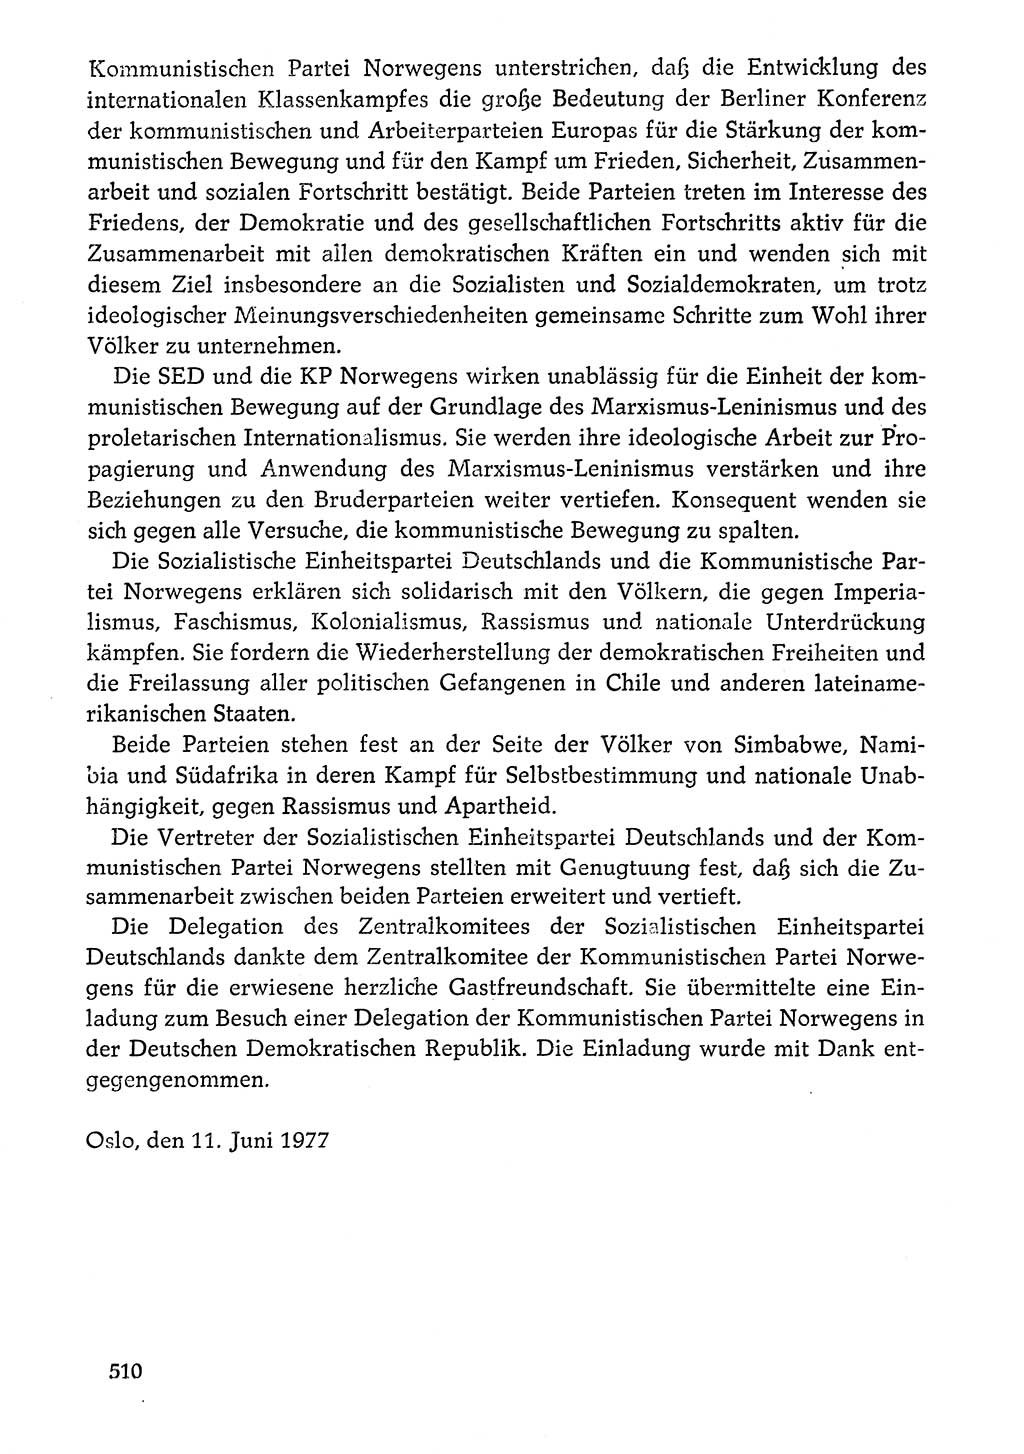 Dokumente der Sozialistischen Einheitspartei Deutschlands (SED) [Deutsche Demokratische Republik (DDR)] 1976-1977, Seite 510 (Dok. SED DDR 1976-1977, S. 510)